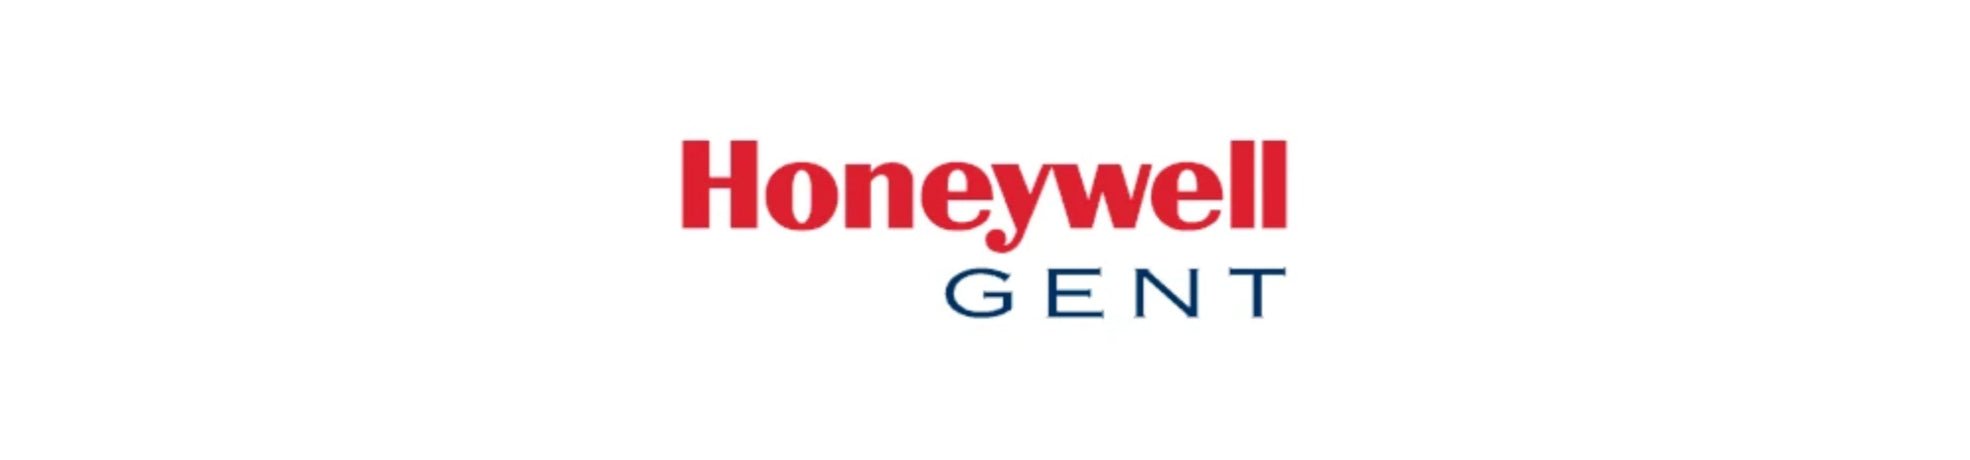 Honeywell Gent - Fire Trade Supplies